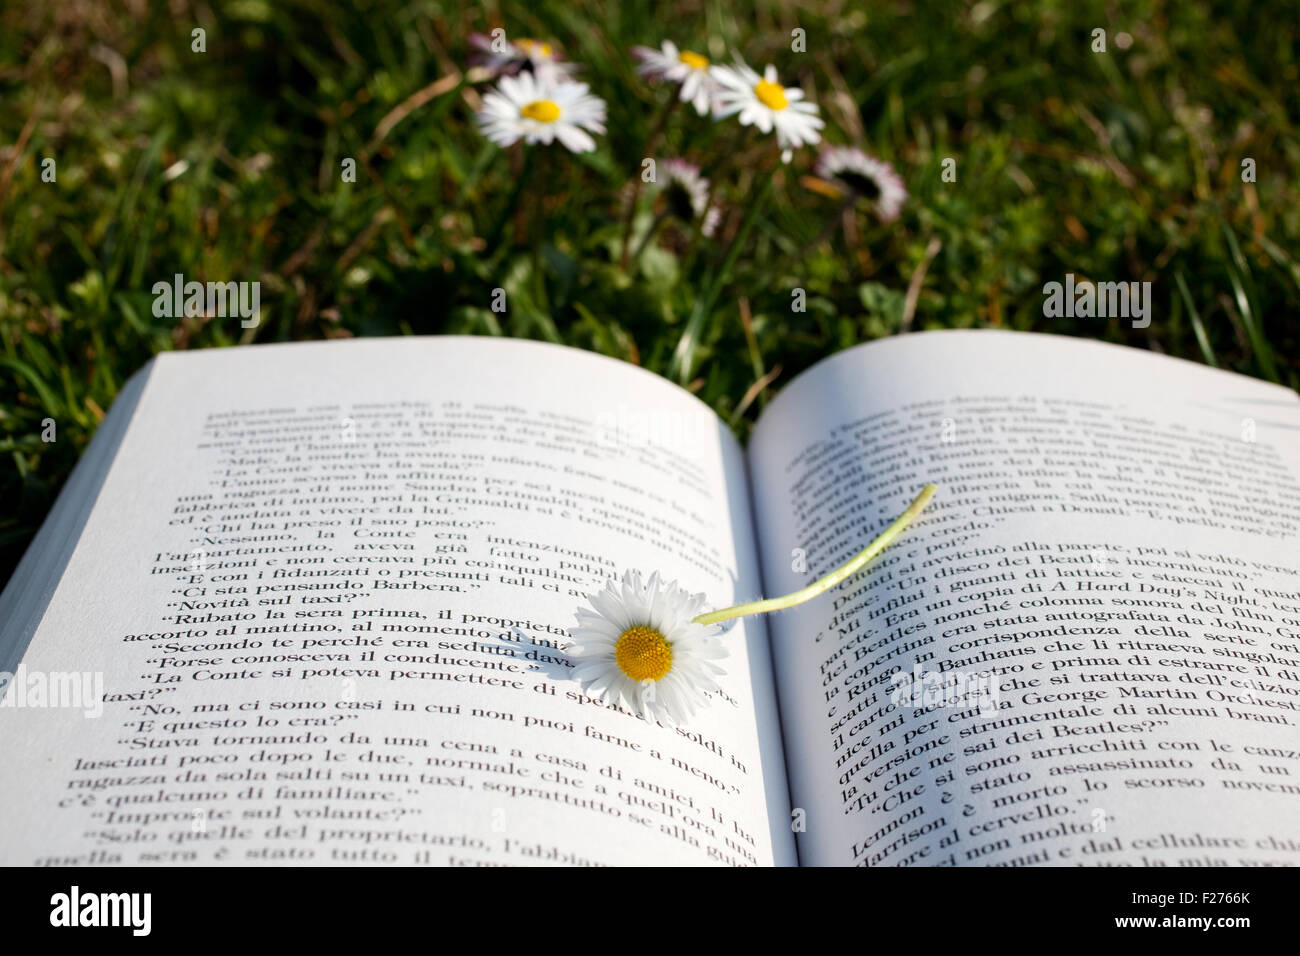 Gänseblümchen auf ein offenes Buch Stockfoto